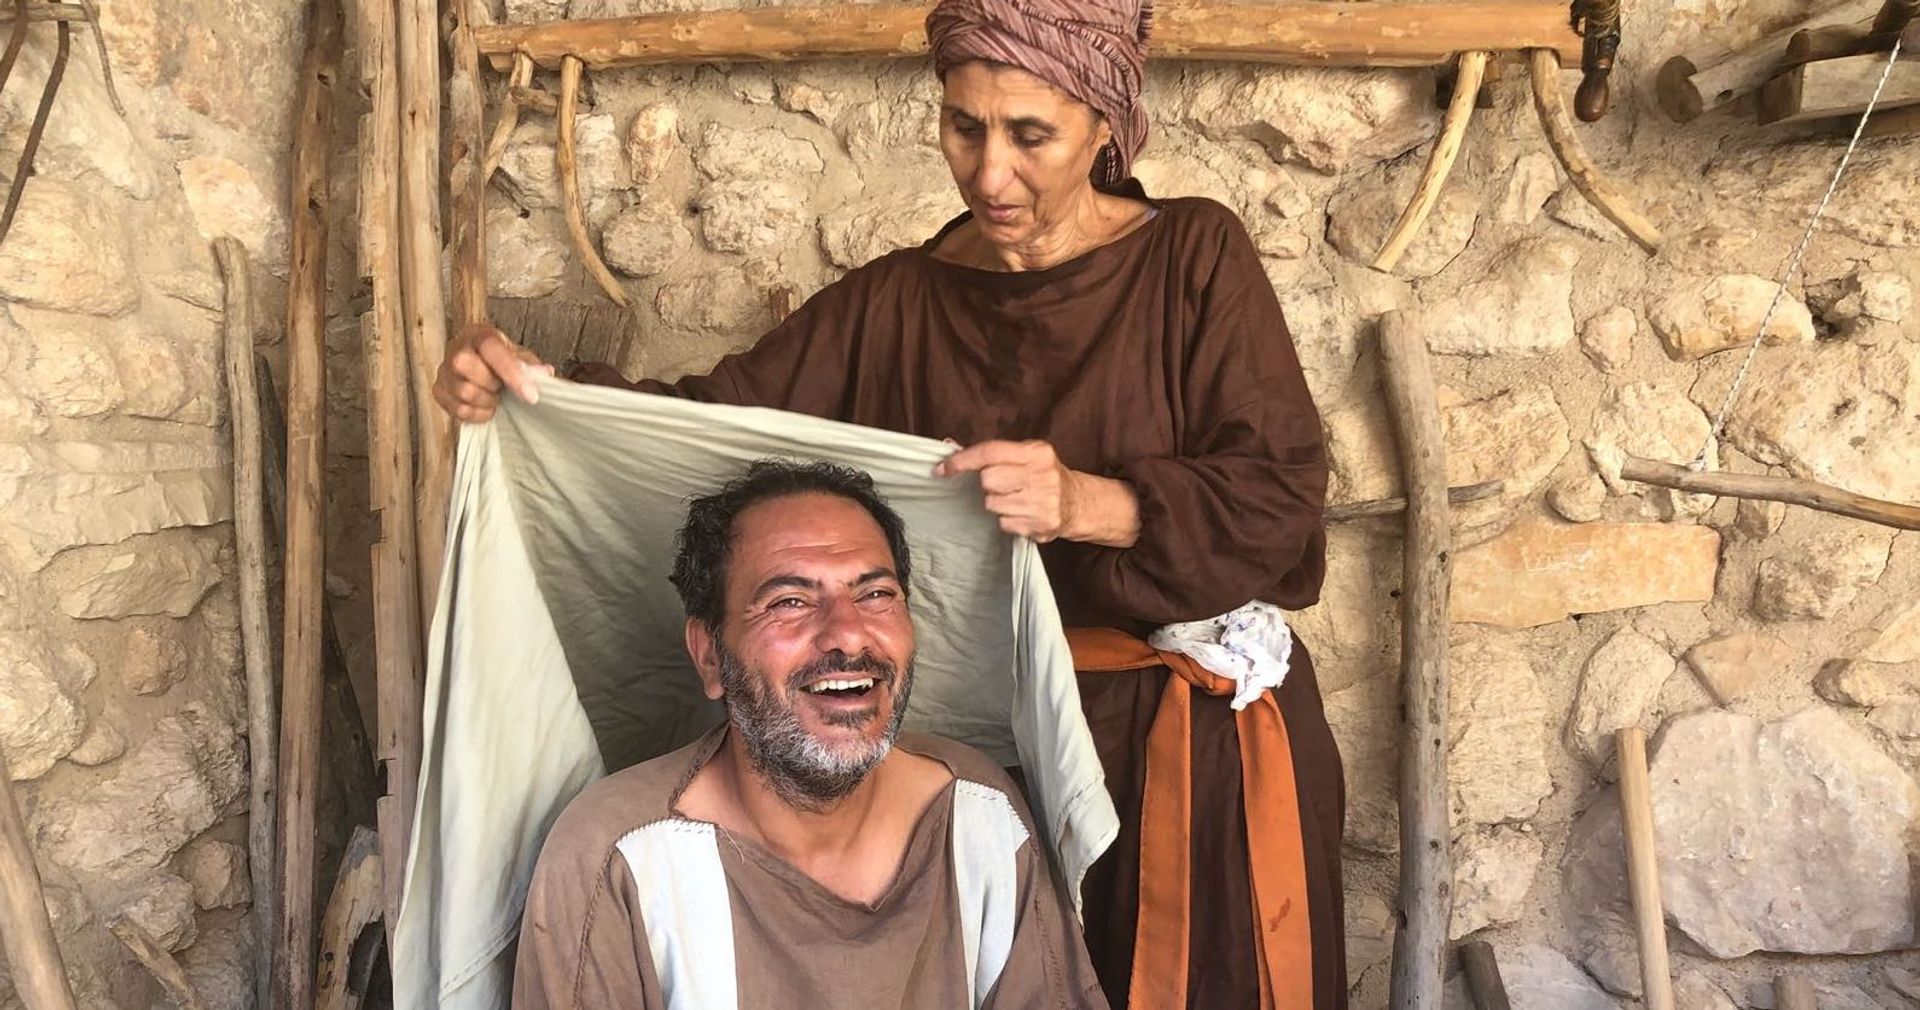 Bekijk ook: Zoektocht Kefah Allush in tv-serie 'Jezus van Nazareth': 'Hoe leefde Hij?'